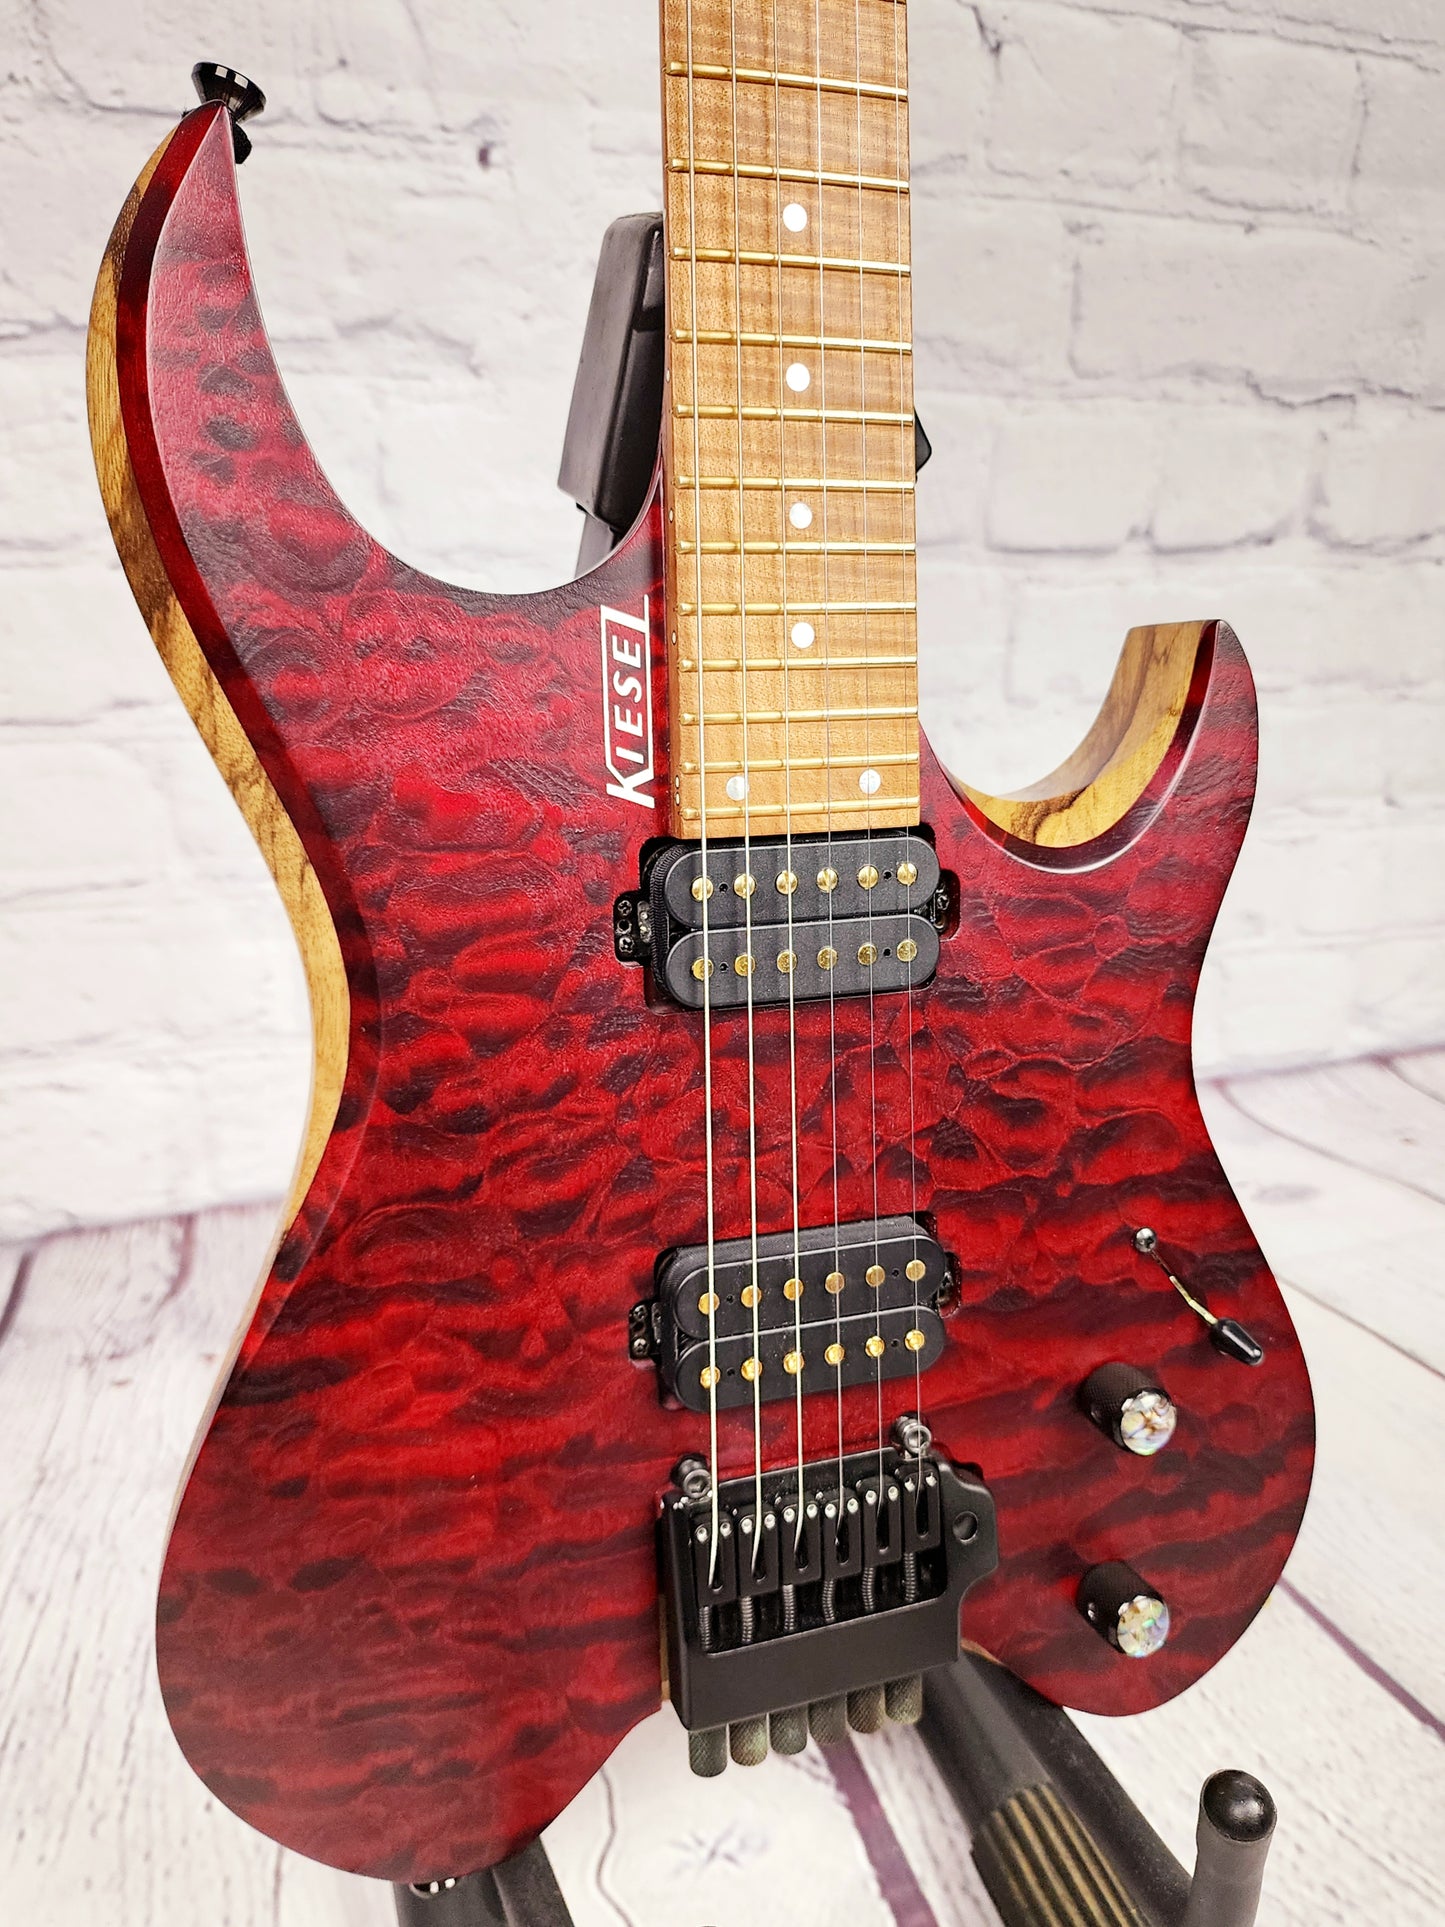 USED Kiesel Vader V6 6 String Quilt High Spec Electric Guitar Crimson Red